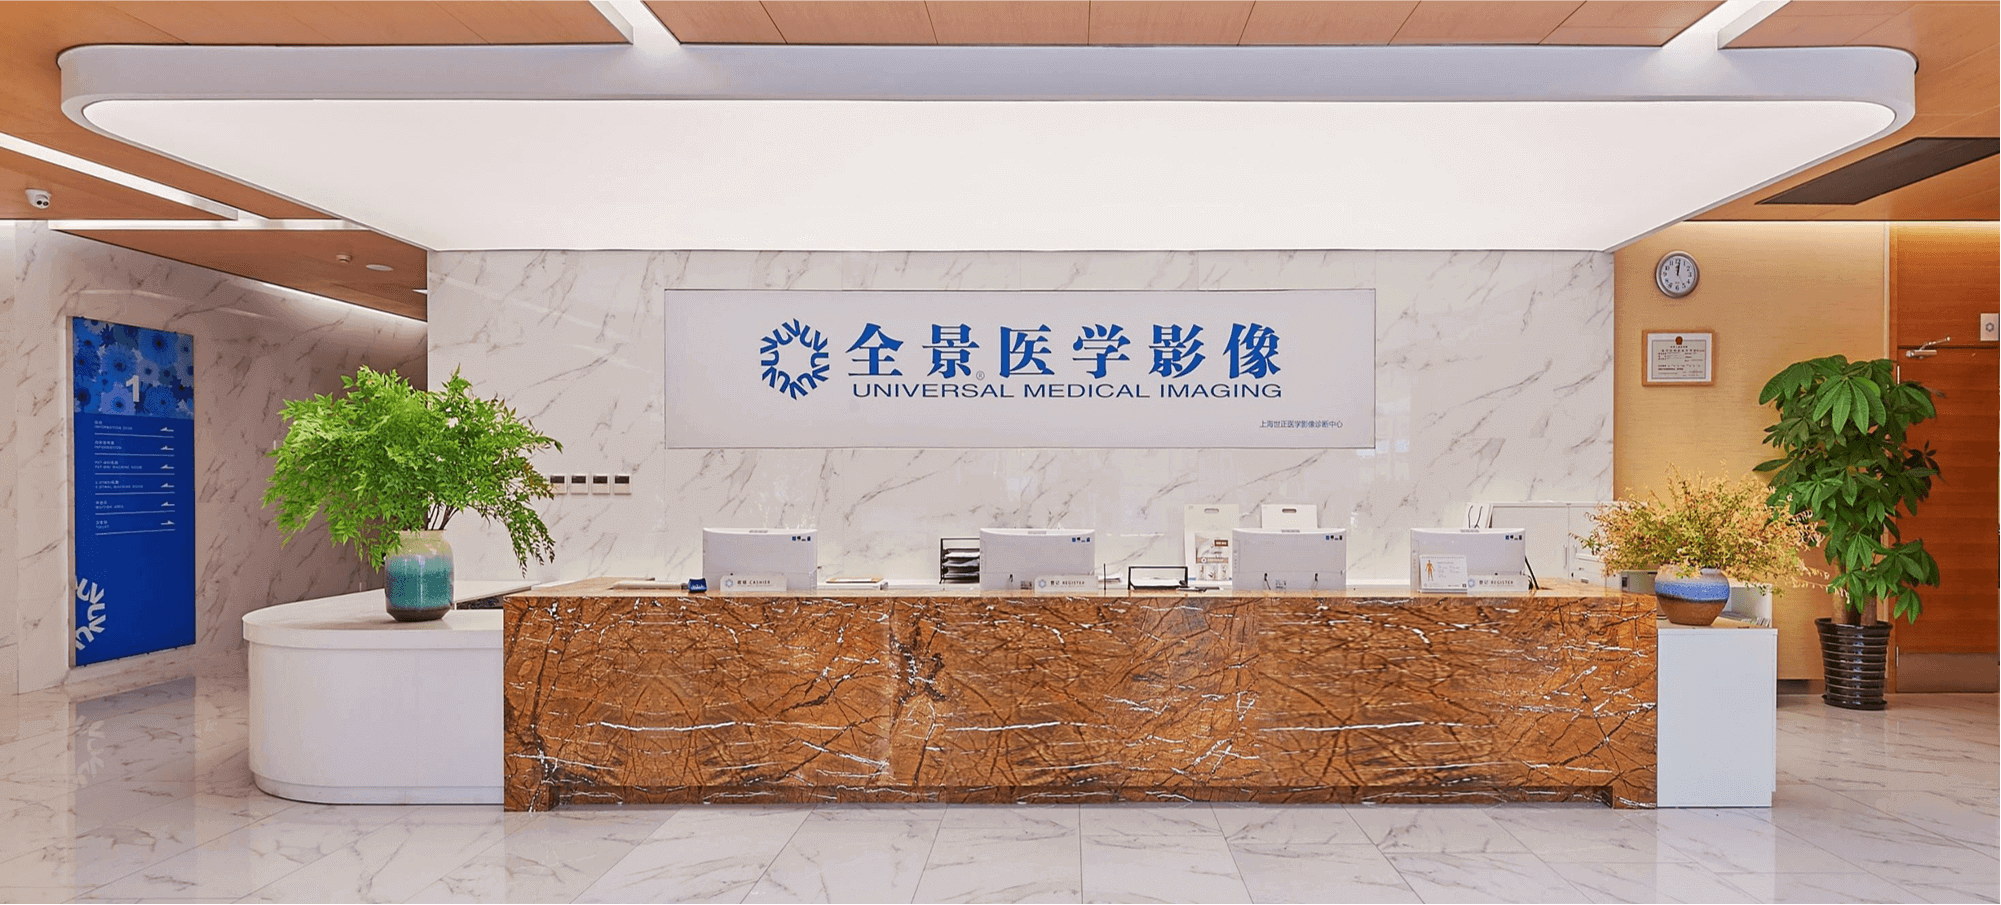 上海全景医学影像诊断中心0